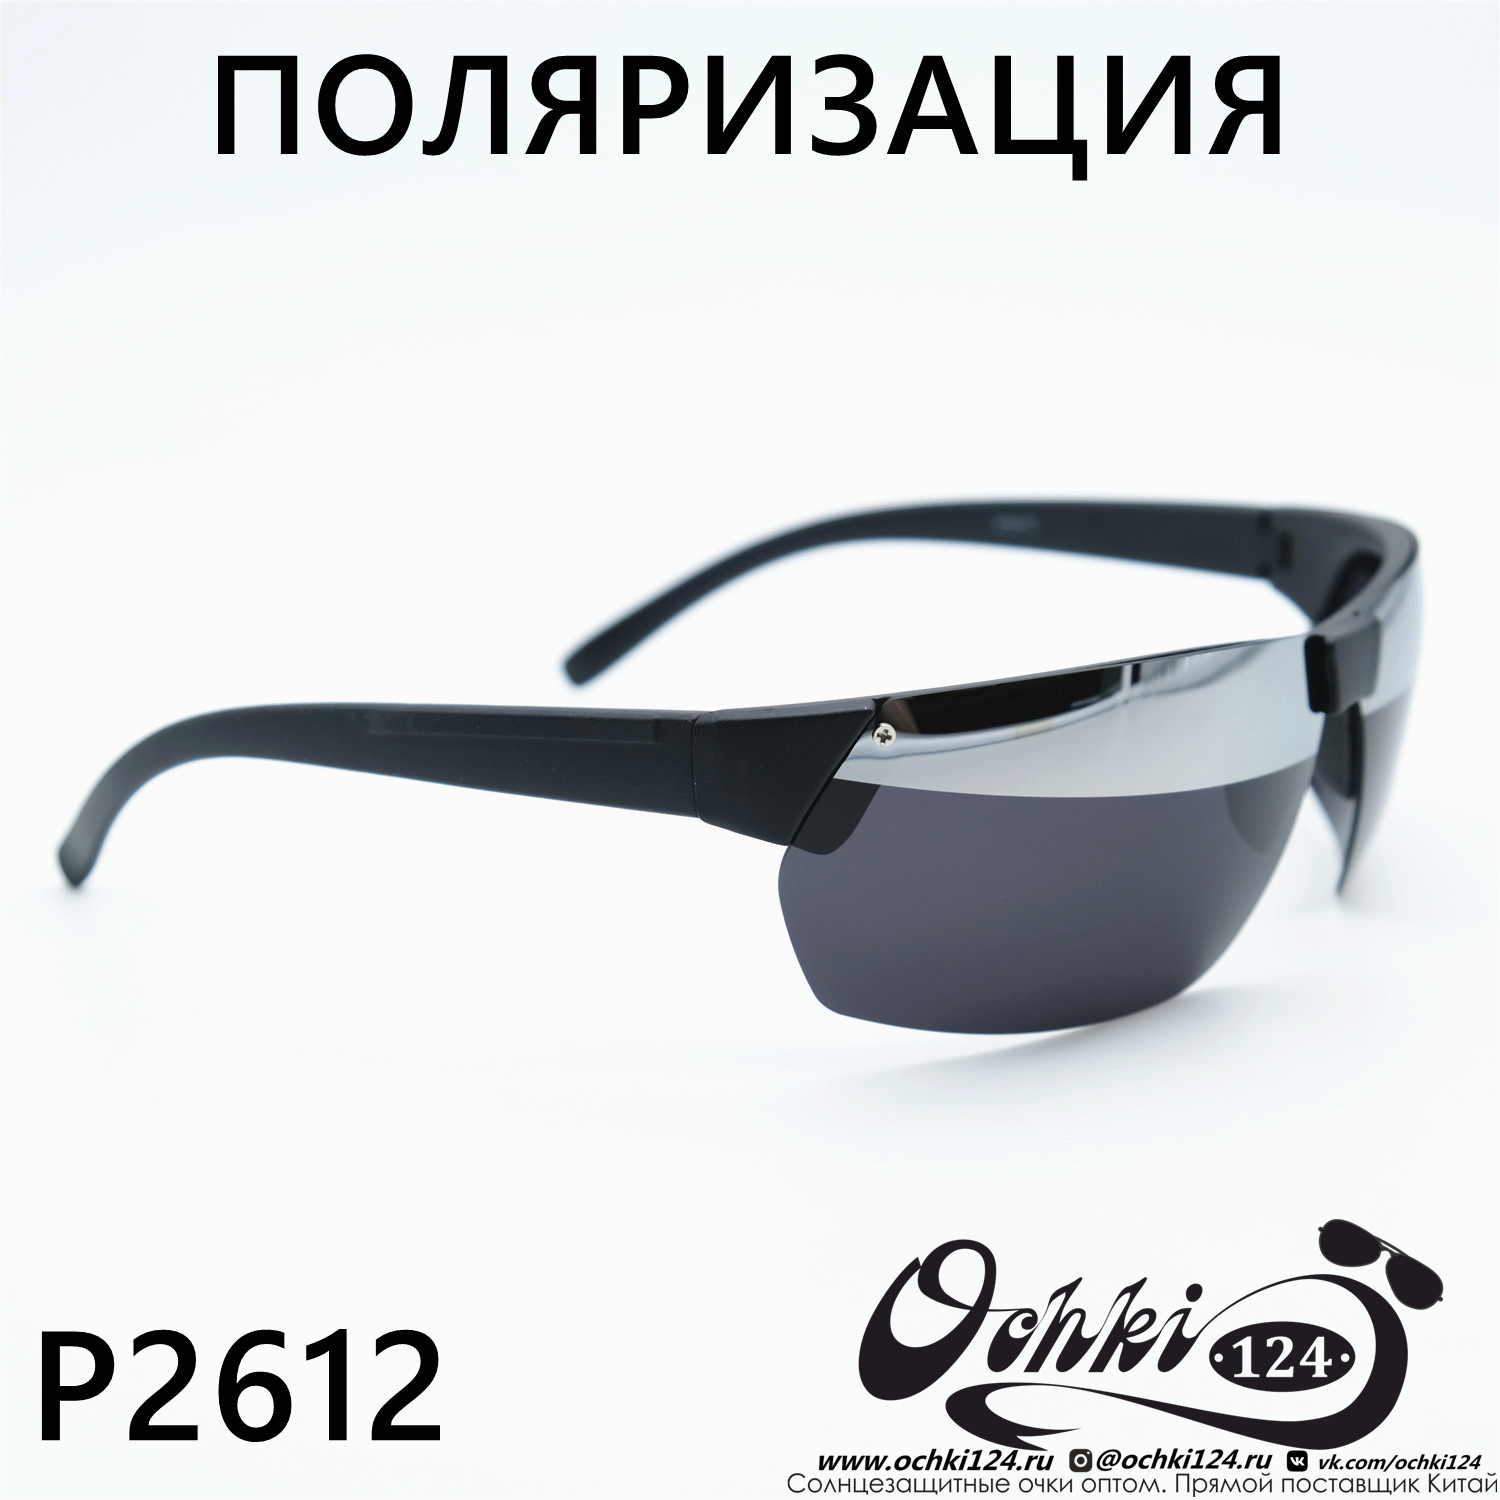  Солнцезащитные очки картинка Мужские MATRIUXT  Прямоугольные P2512-C4 